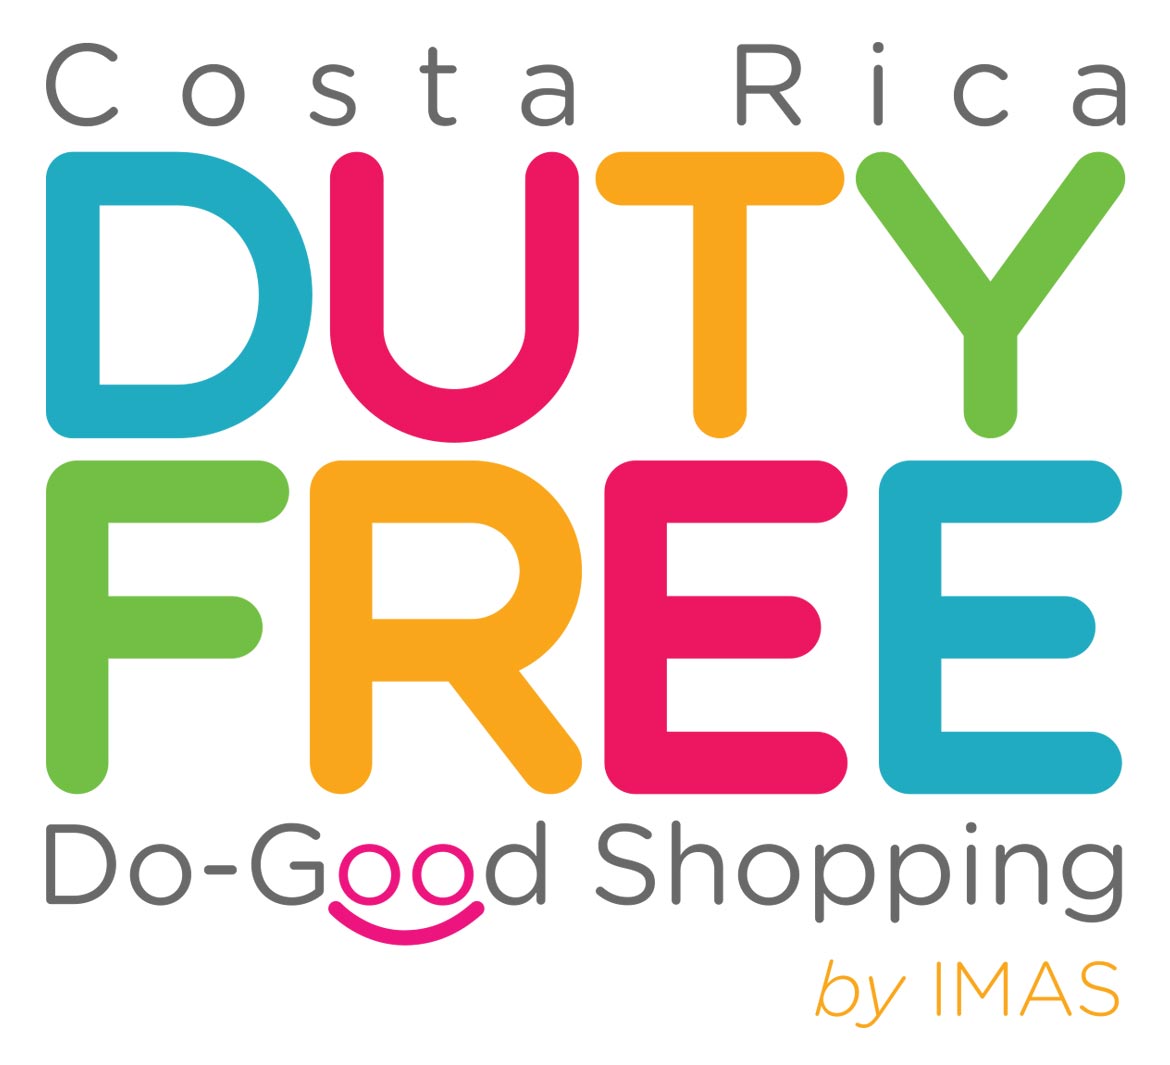 Imagen del nuevo logo del duty free, cuyo lanzamiento será en diciembre 2016